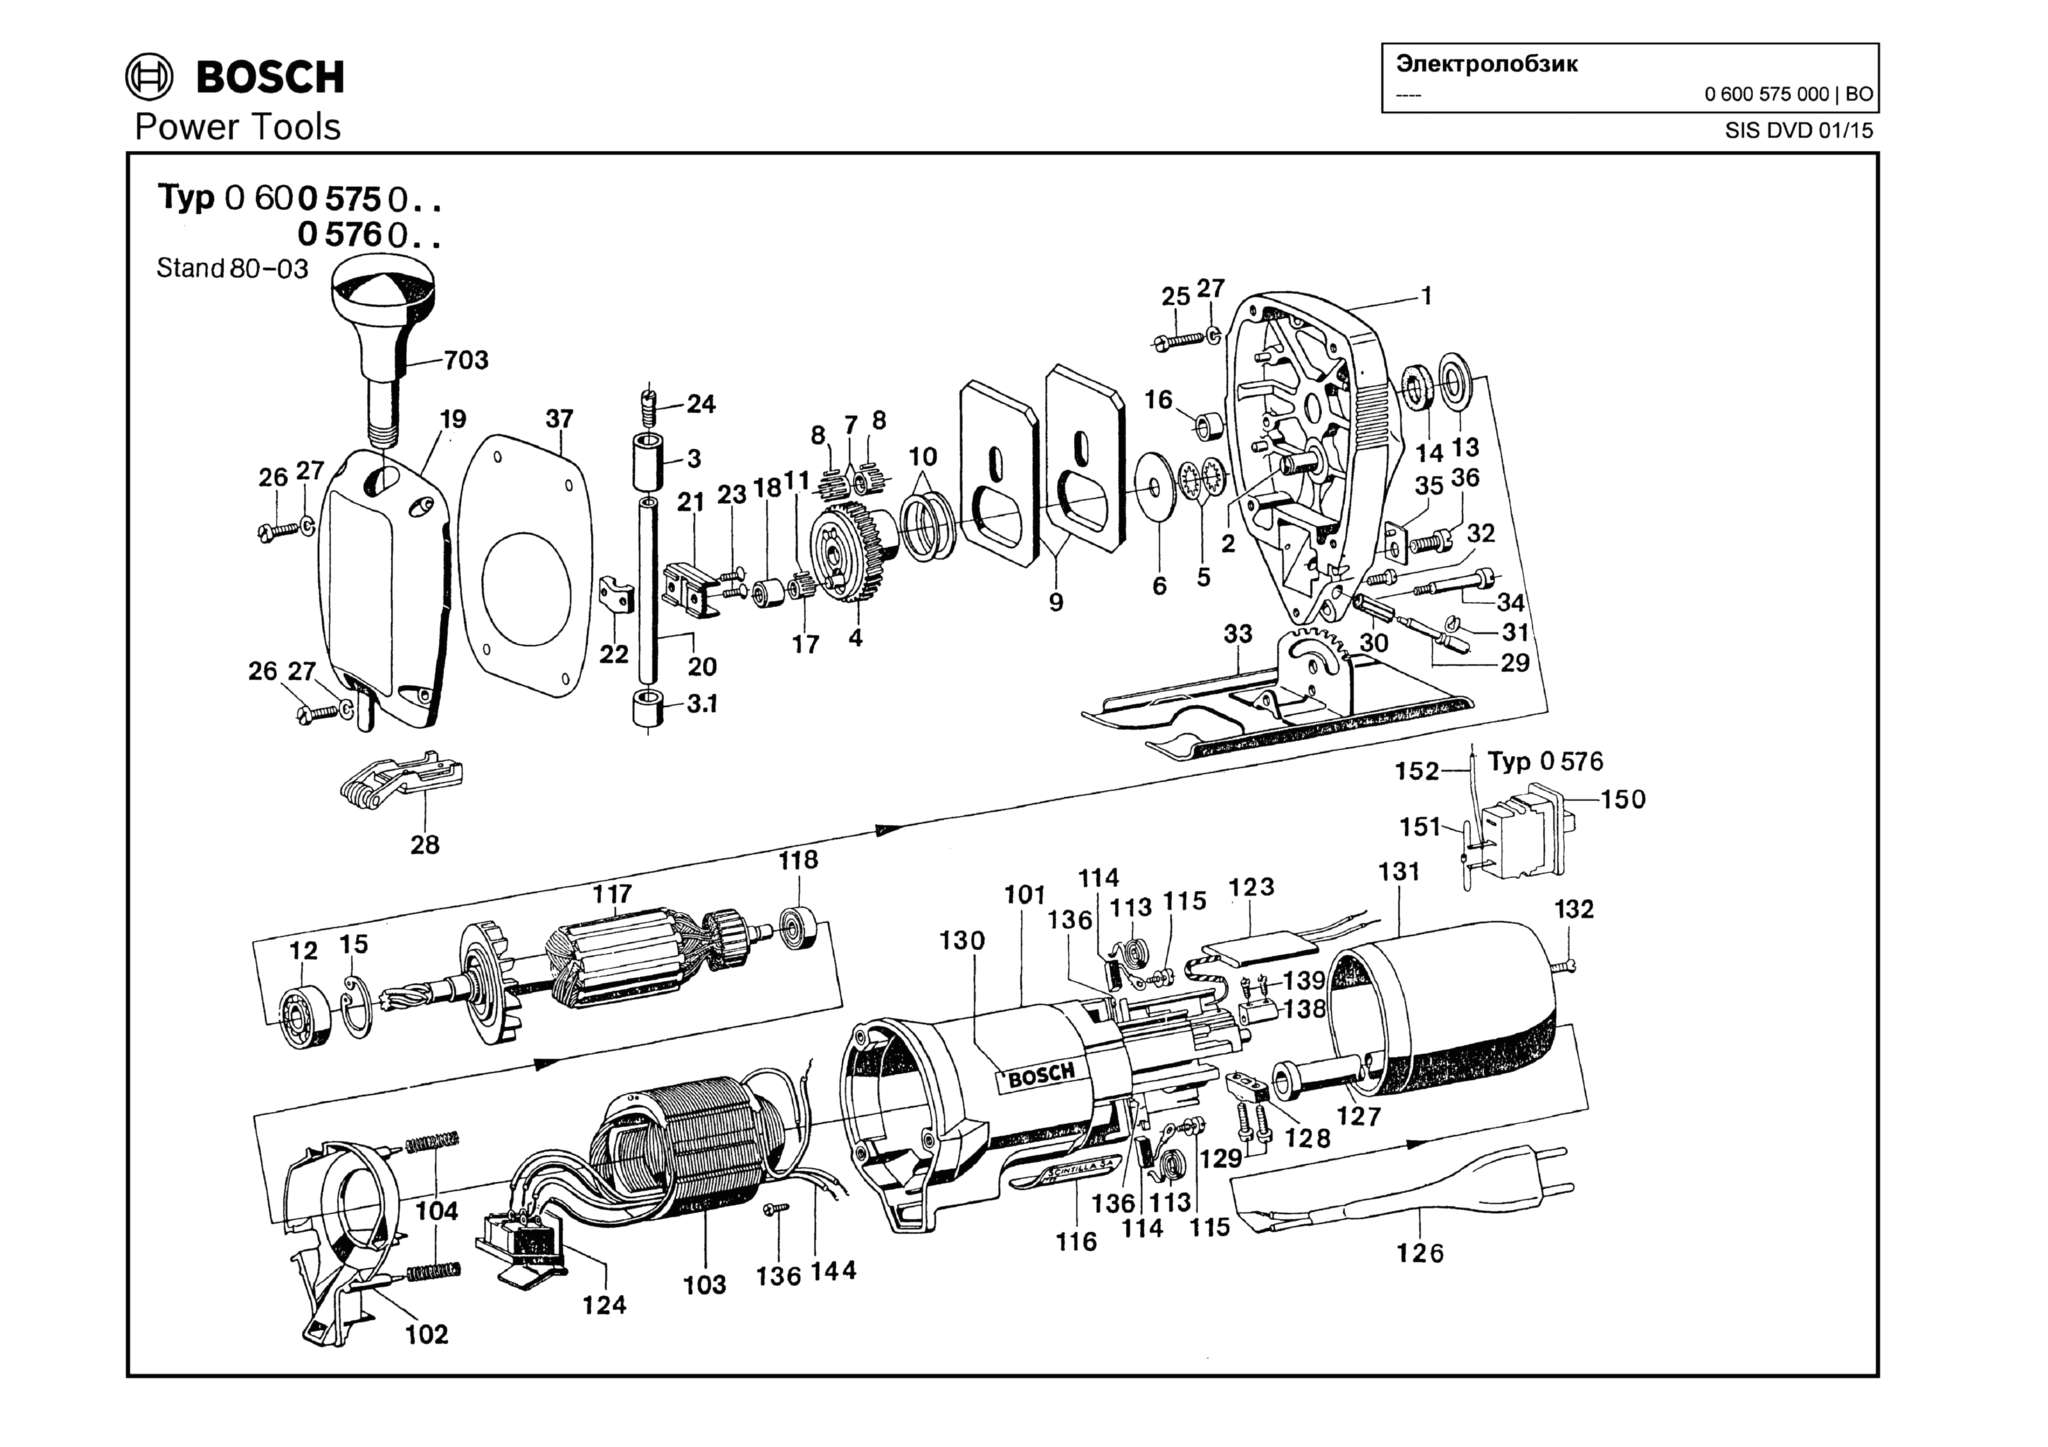 Запчасти, схема и деталировка Bosch (ТИП 0600575000)